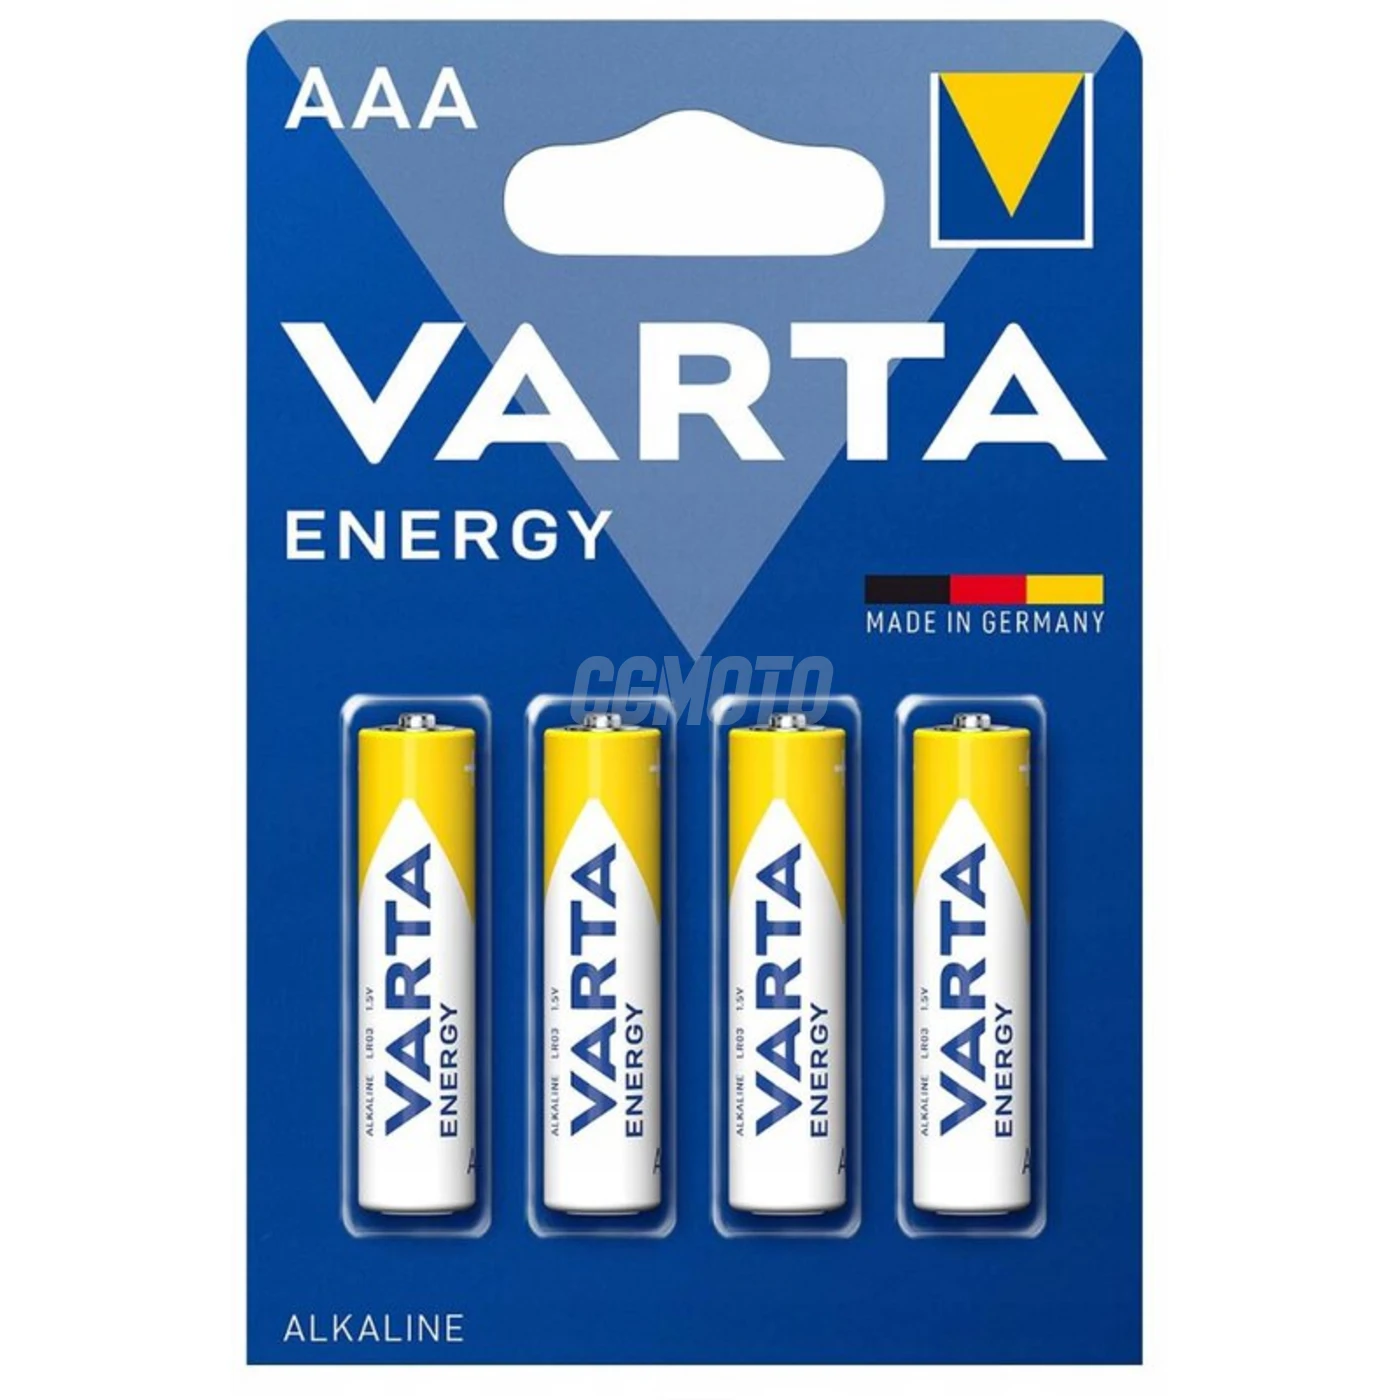 Varta ENERGY MINI STILO/AAA x 4 pile (blister)